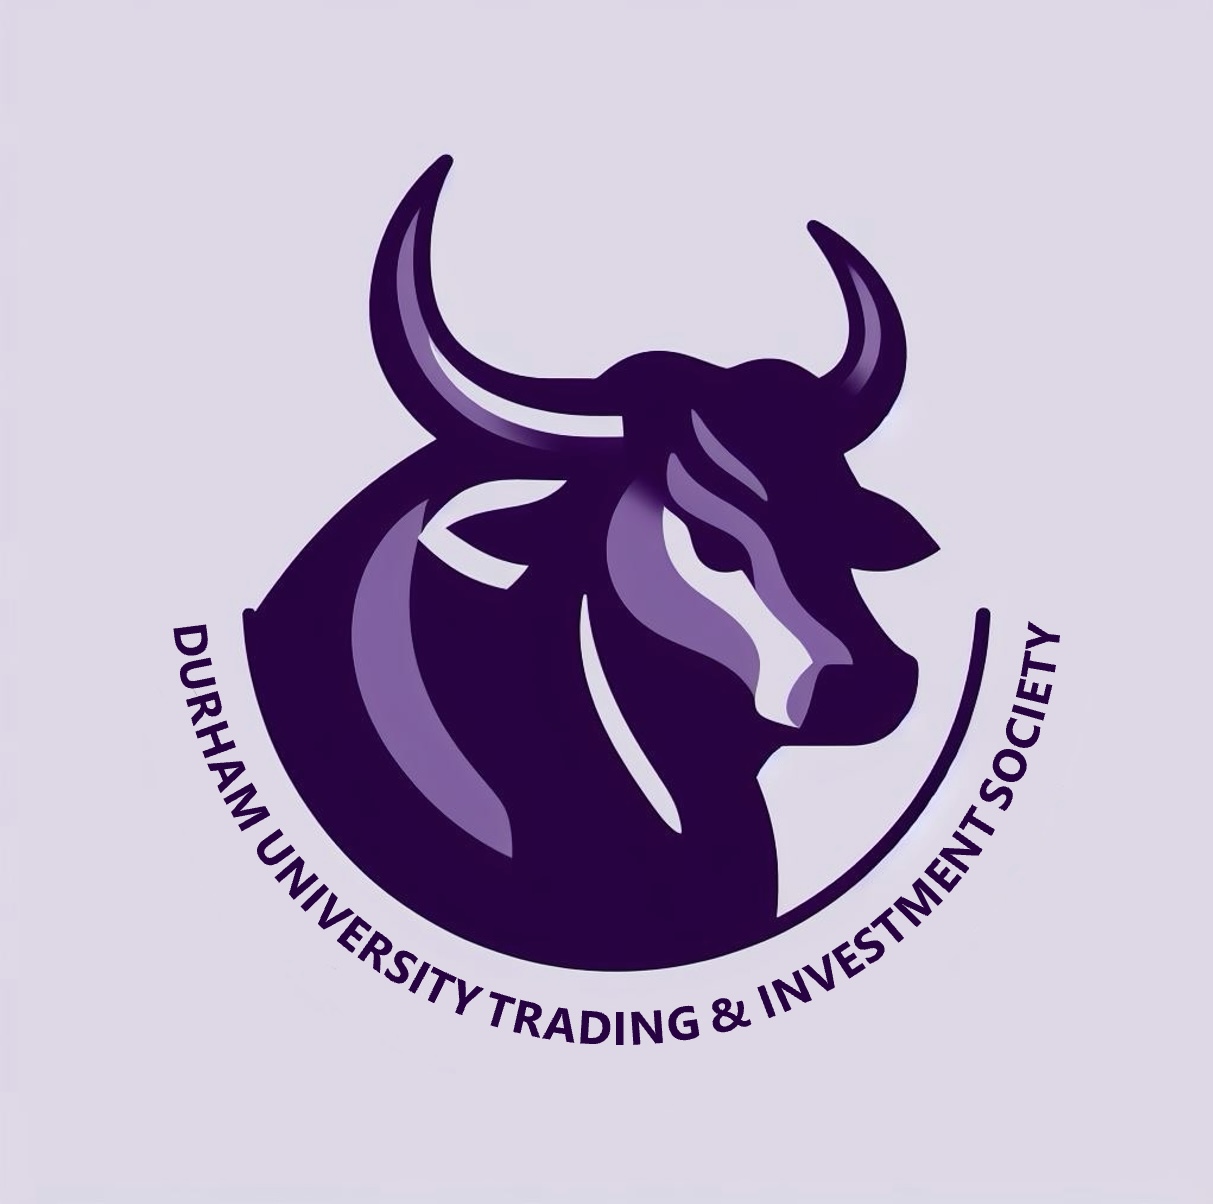 Logo of Durham University Trading & Investment Society